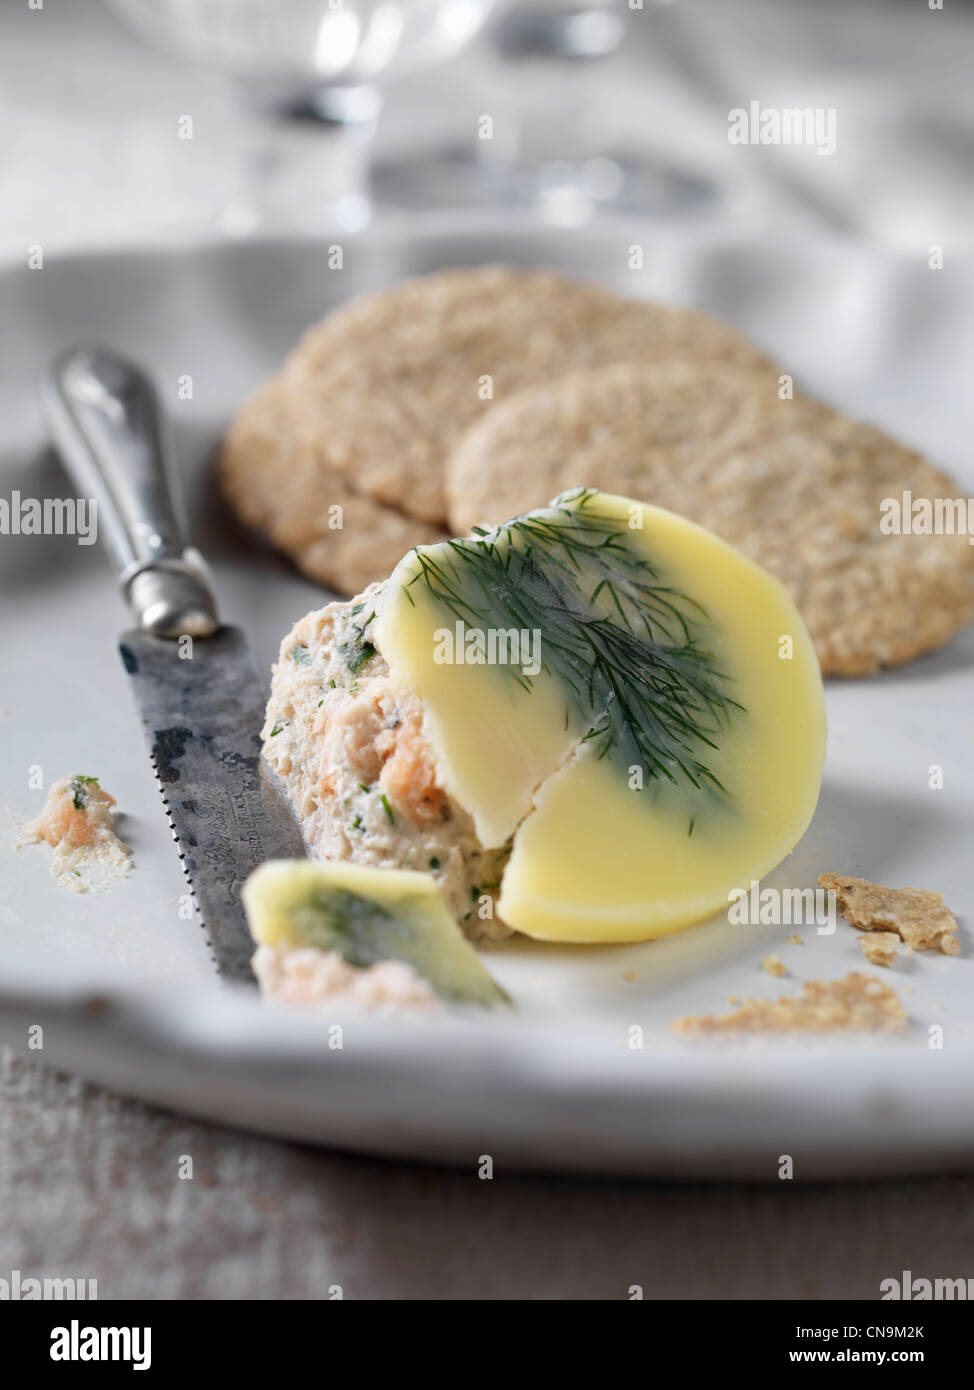 Assiette de pate de saumon avec des craquelins Banque D'Images